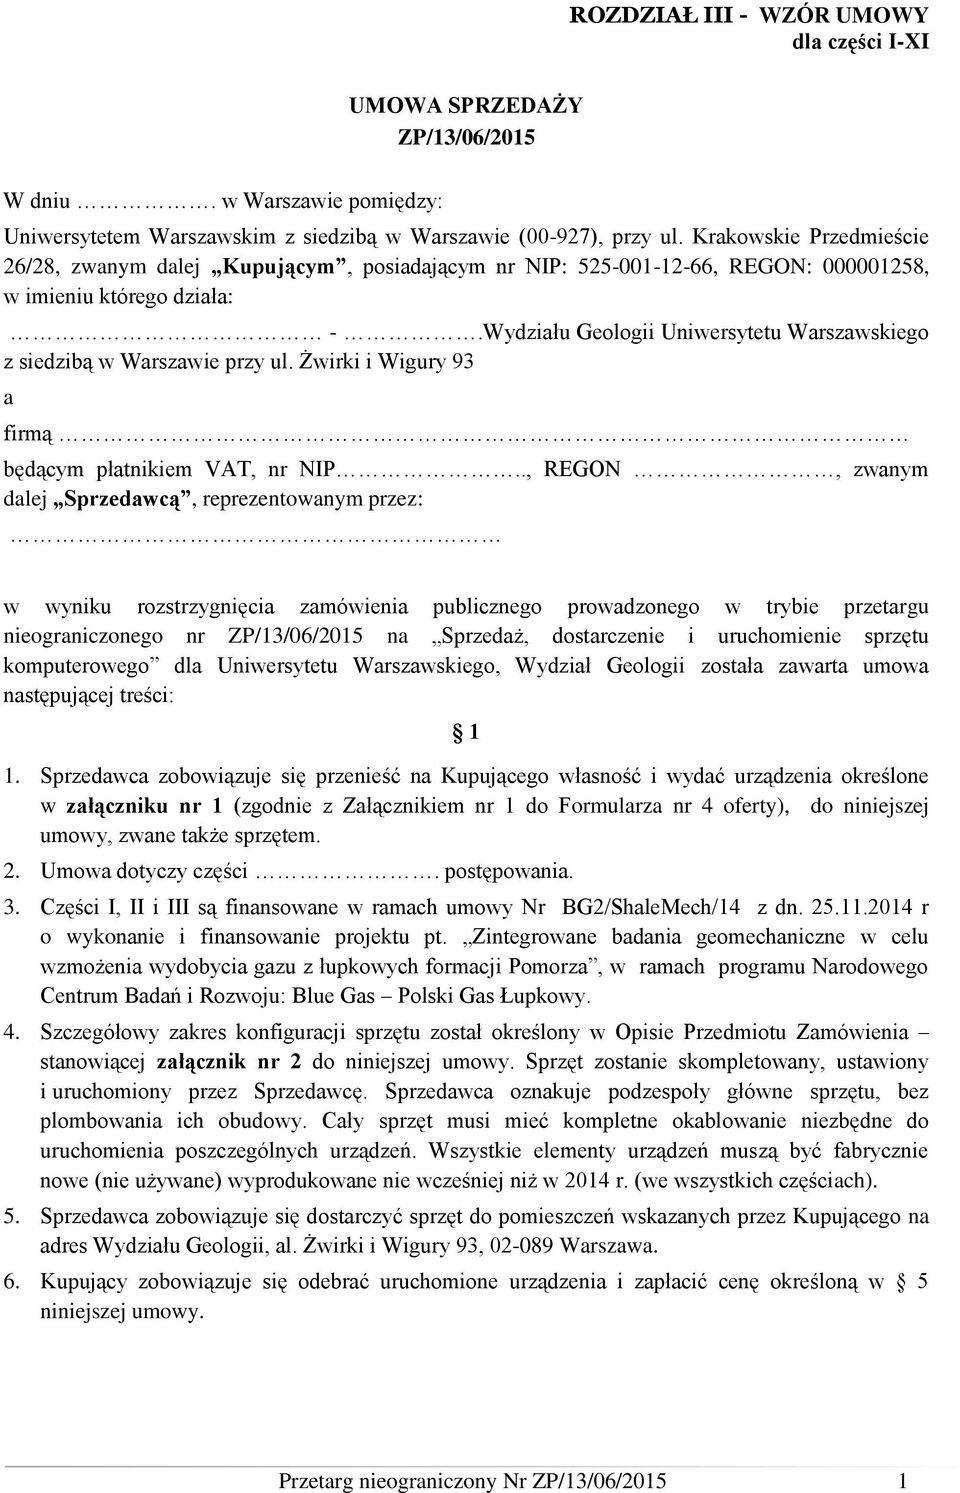 Wydziału Geologii Uniwersytetu Warszawskiego z siedzibą w Warszawie przy ul. Żwirki i Wigury 93 a firmą będącym płatnikiem VAT, nr NIP.